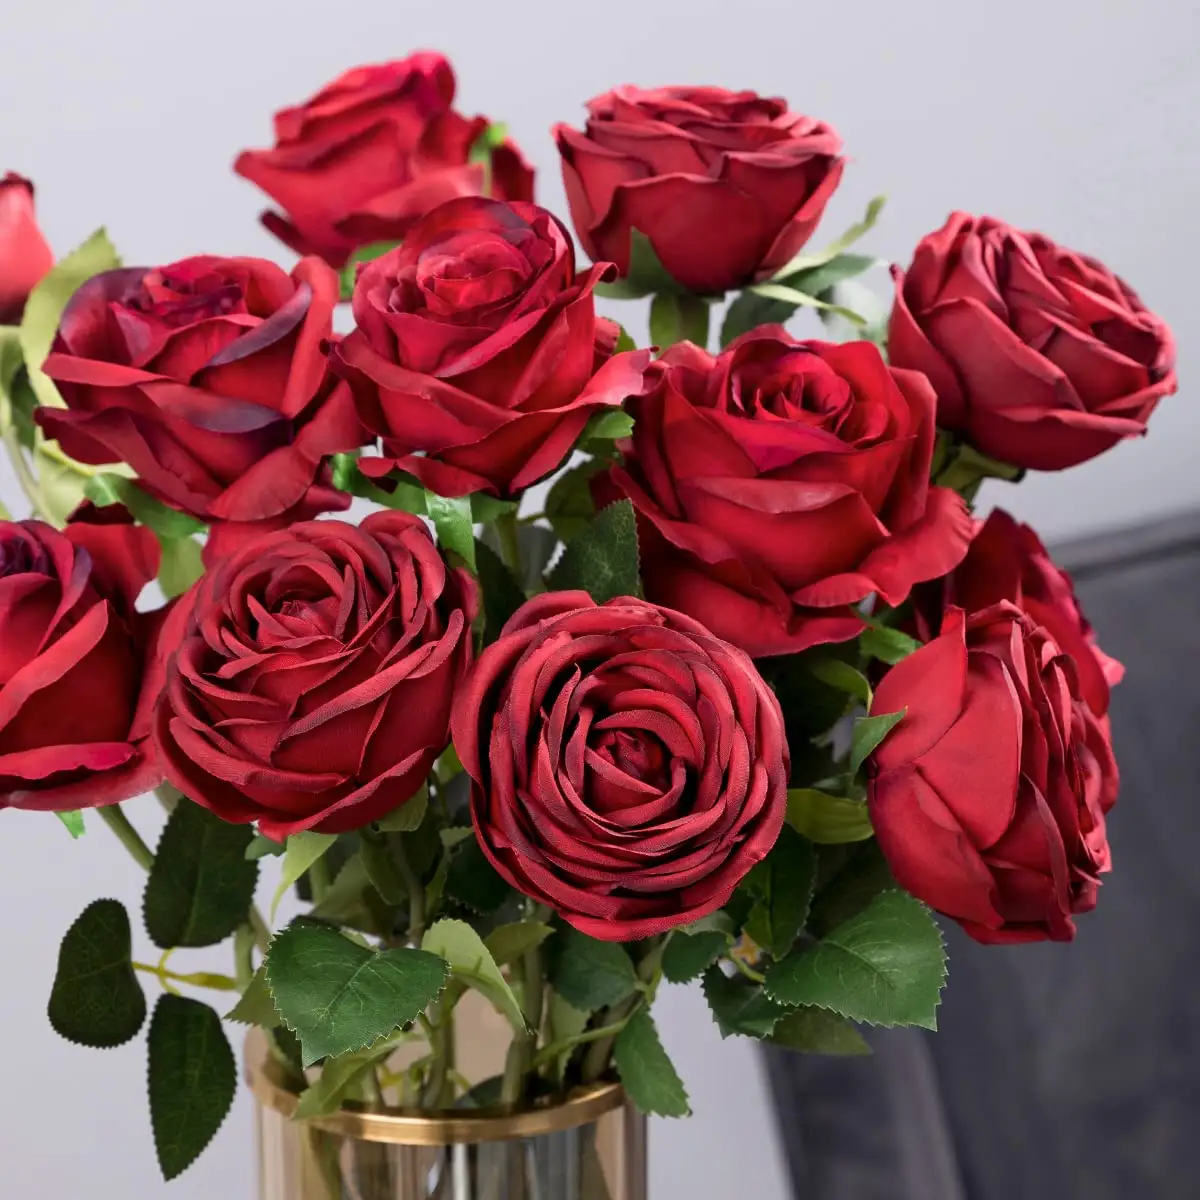 Flanella Rose fiori di seta artificiale Rose steli lunghi mazzi di Rose finte realistiche per decorazioni nuziali addio al nubilato